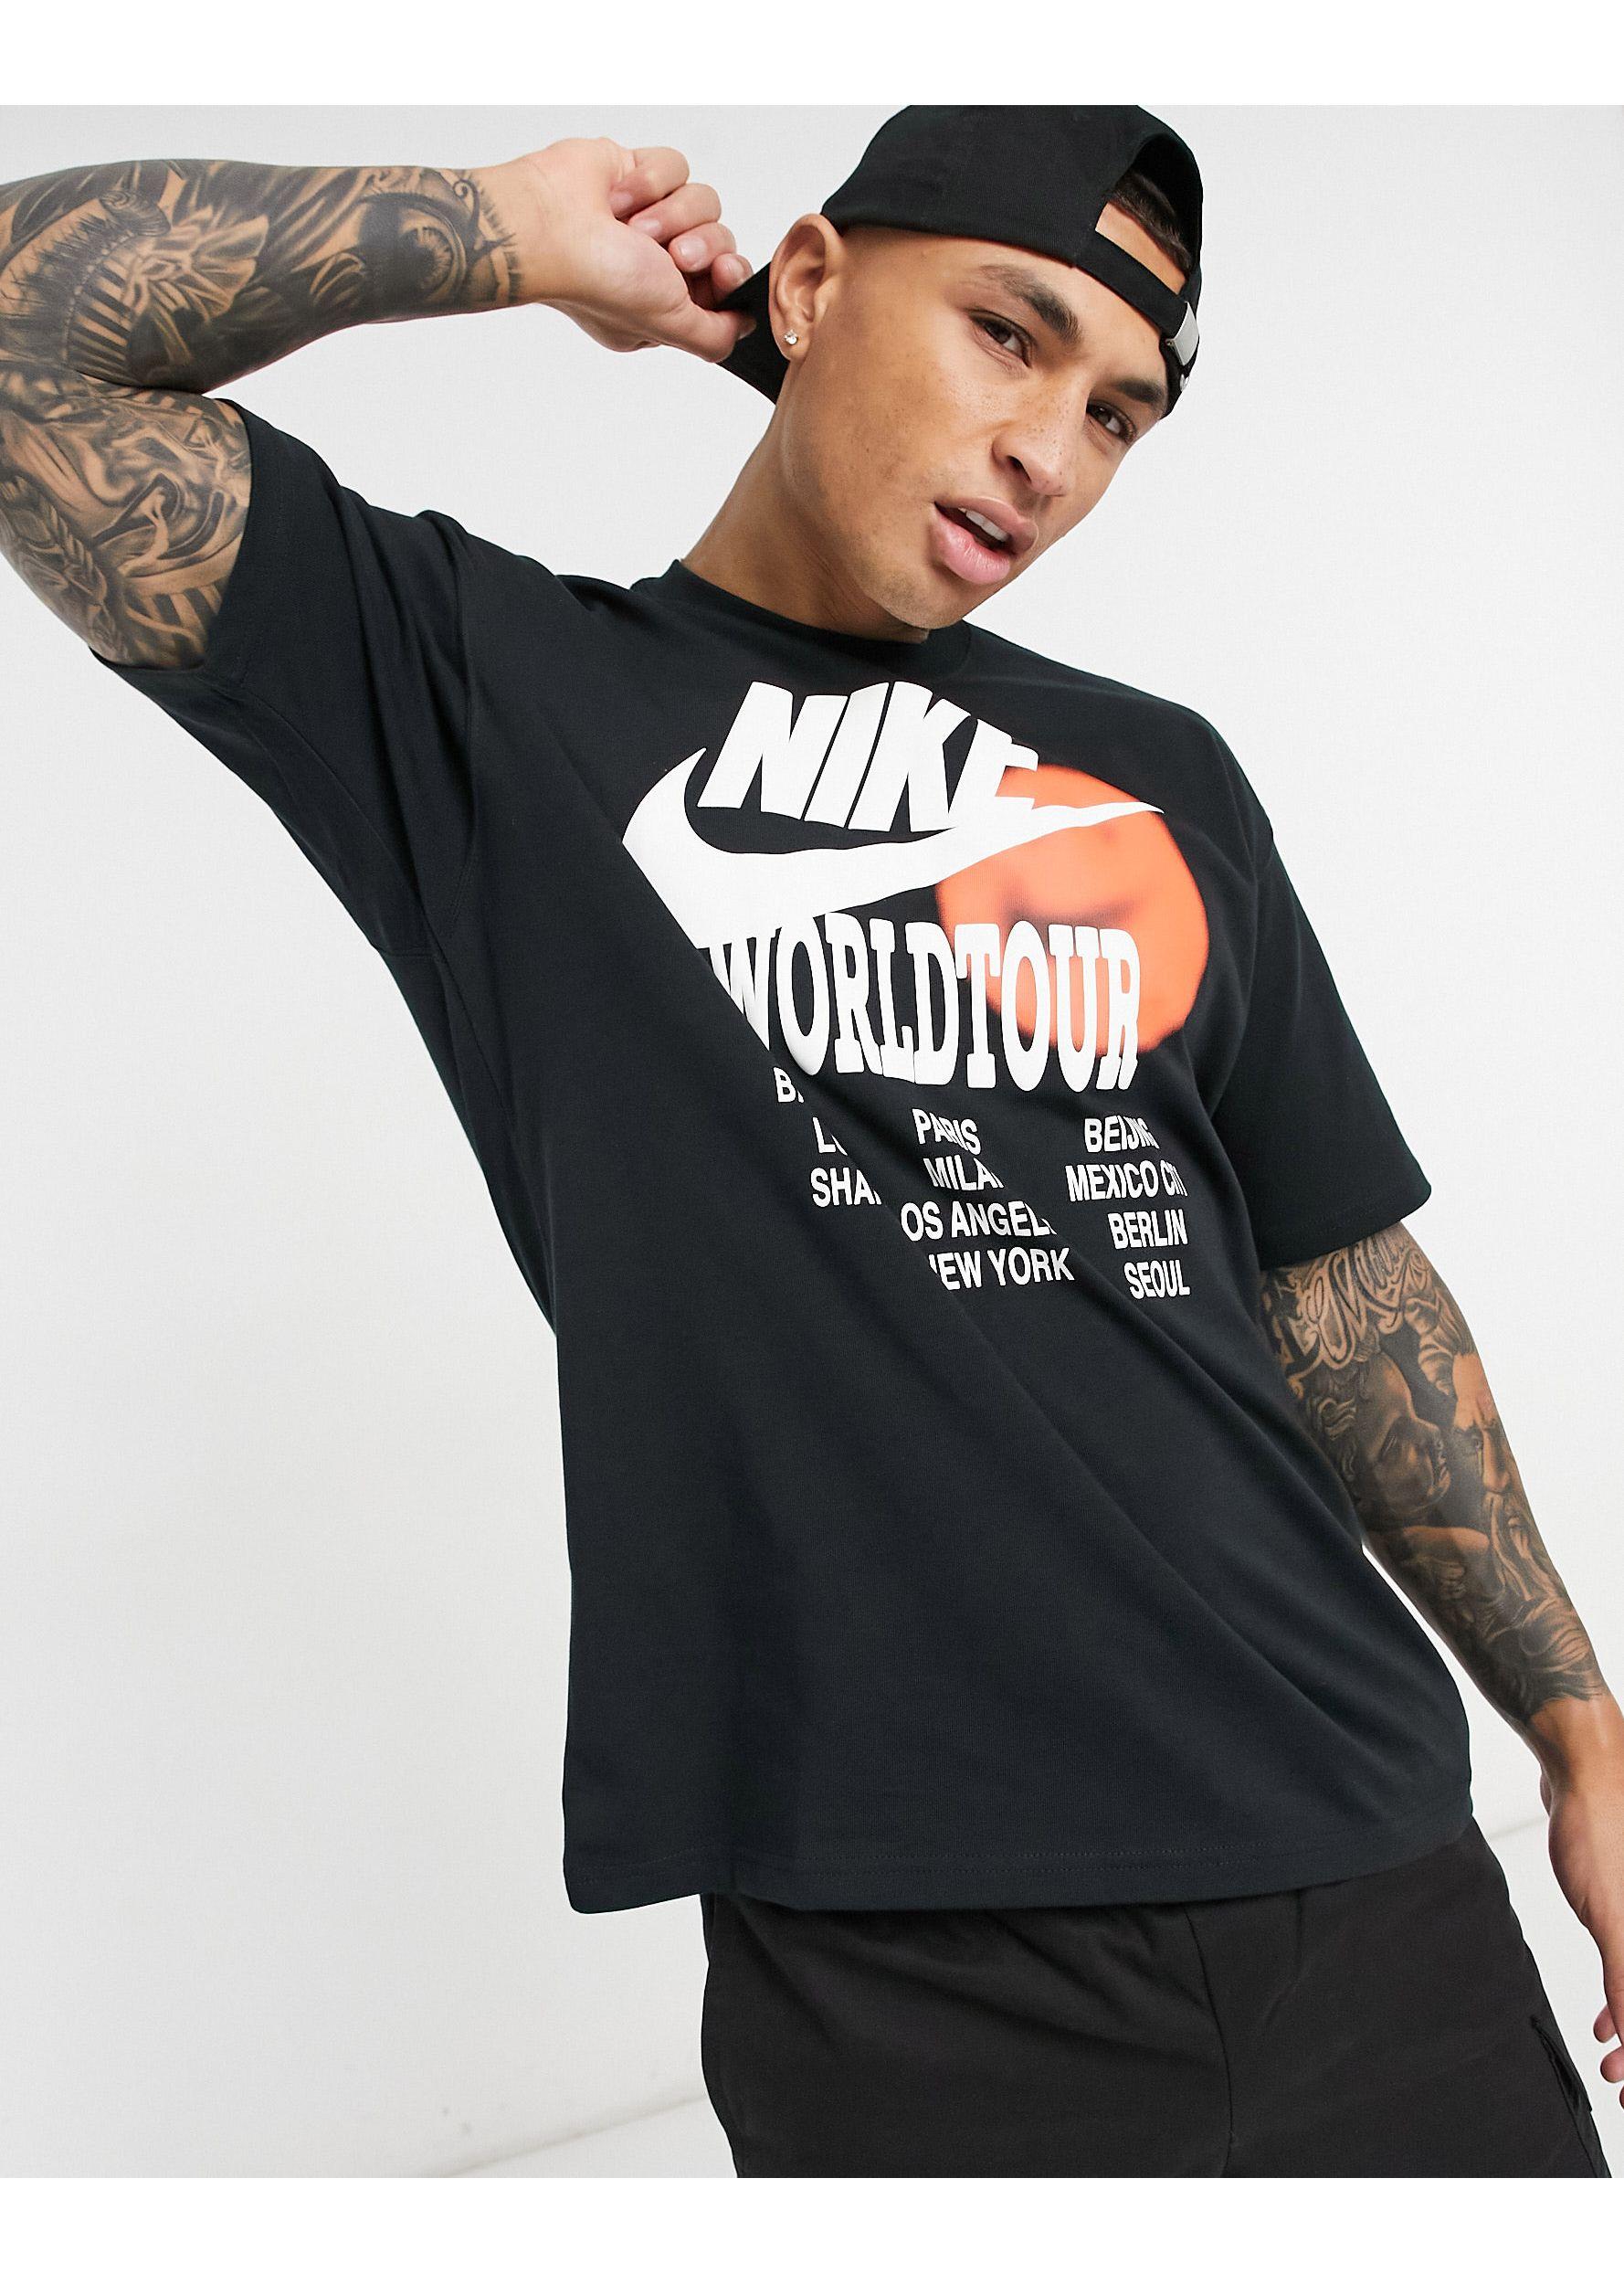 nike world tour t shirt back print